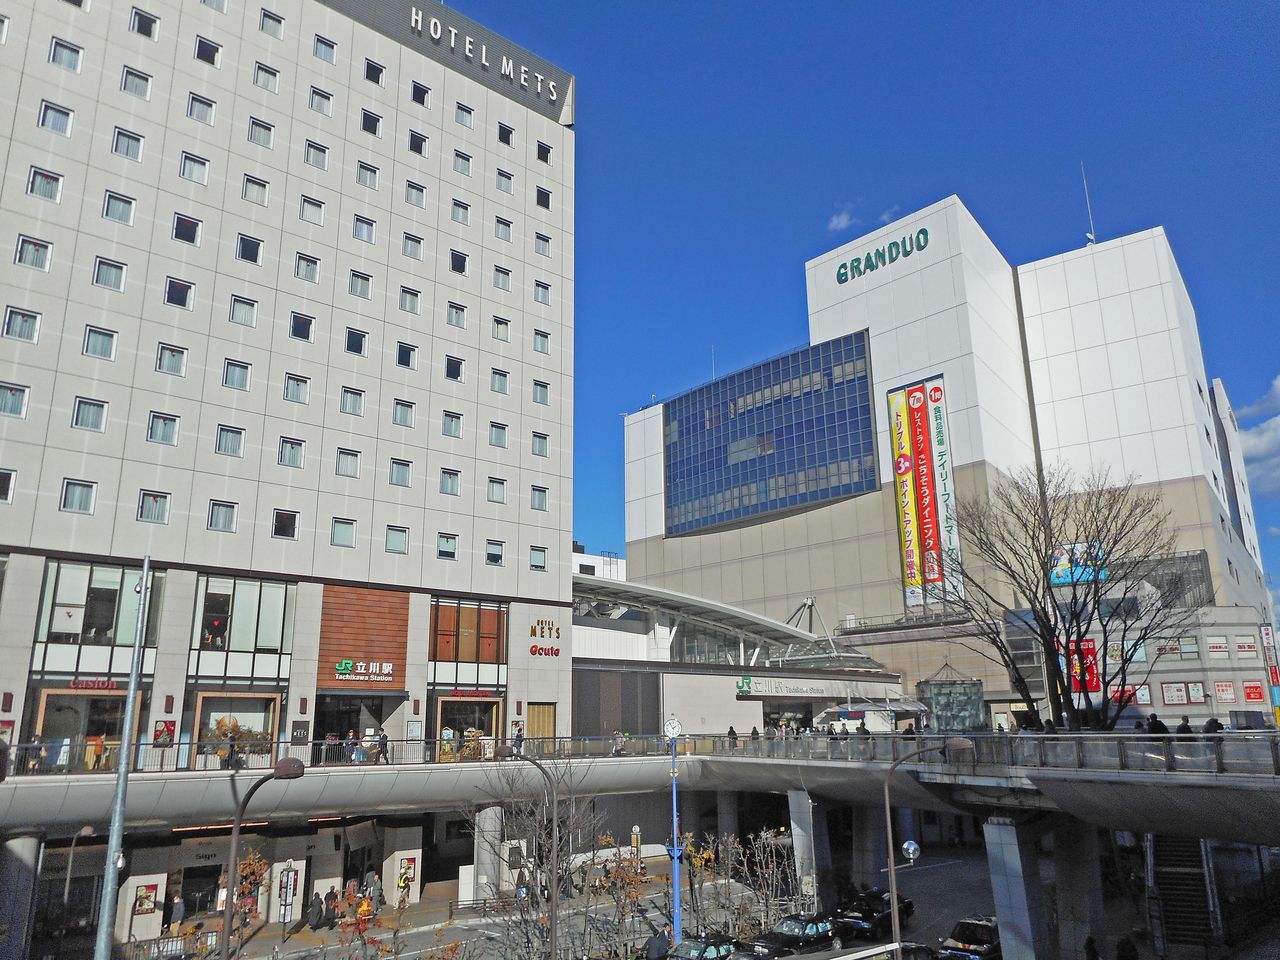 立川駅には他にもルミネをはじめとした商業施設が多数